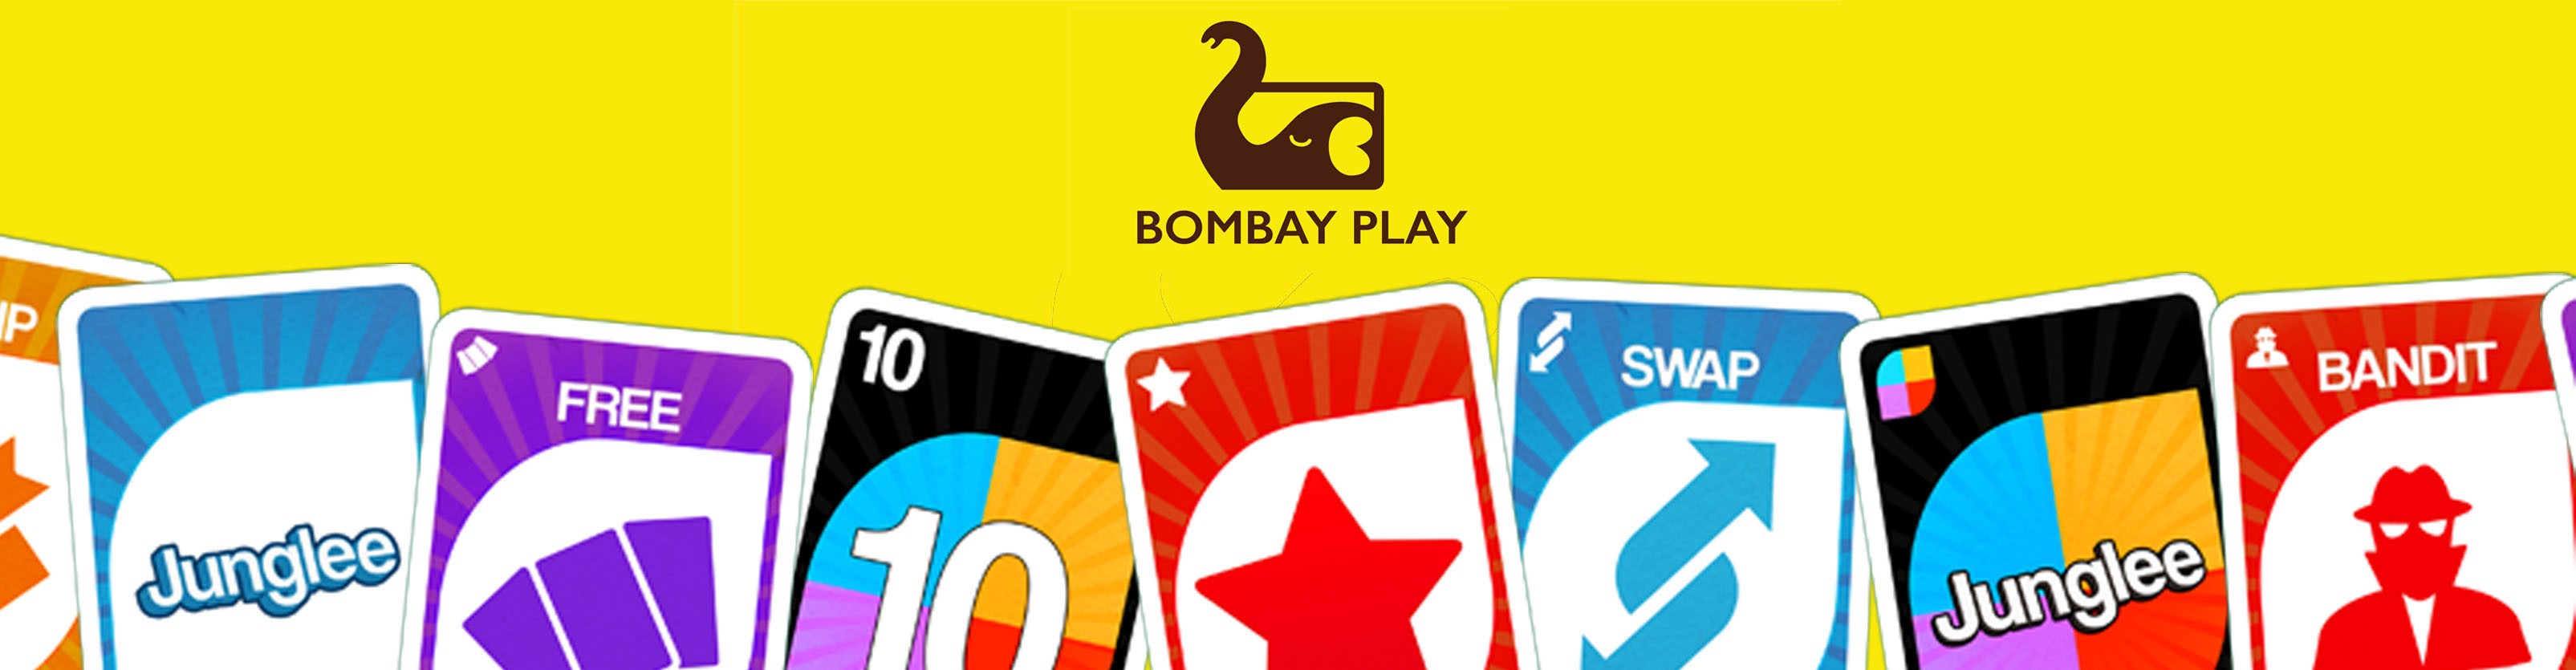 Bombay Play | LinkedIn